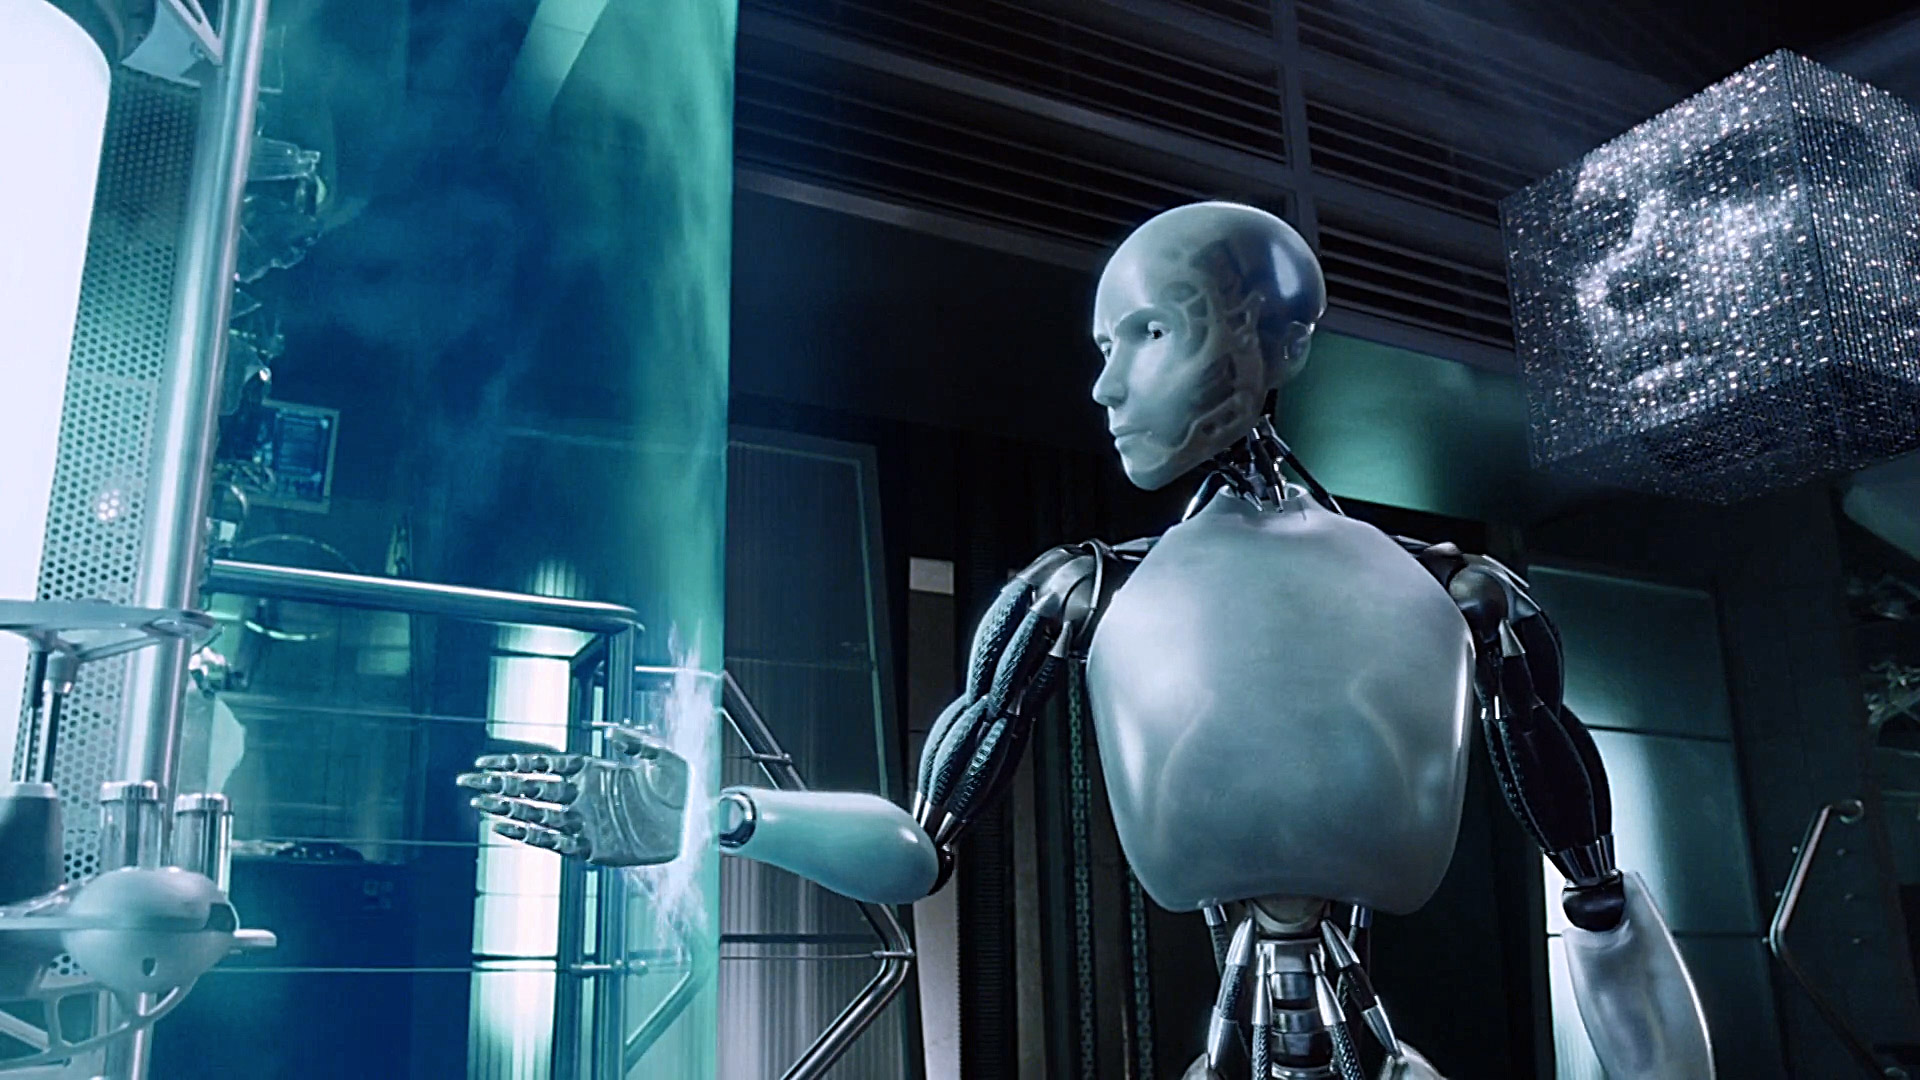 Кадр із фільму "Я, робот" (олди тут?)